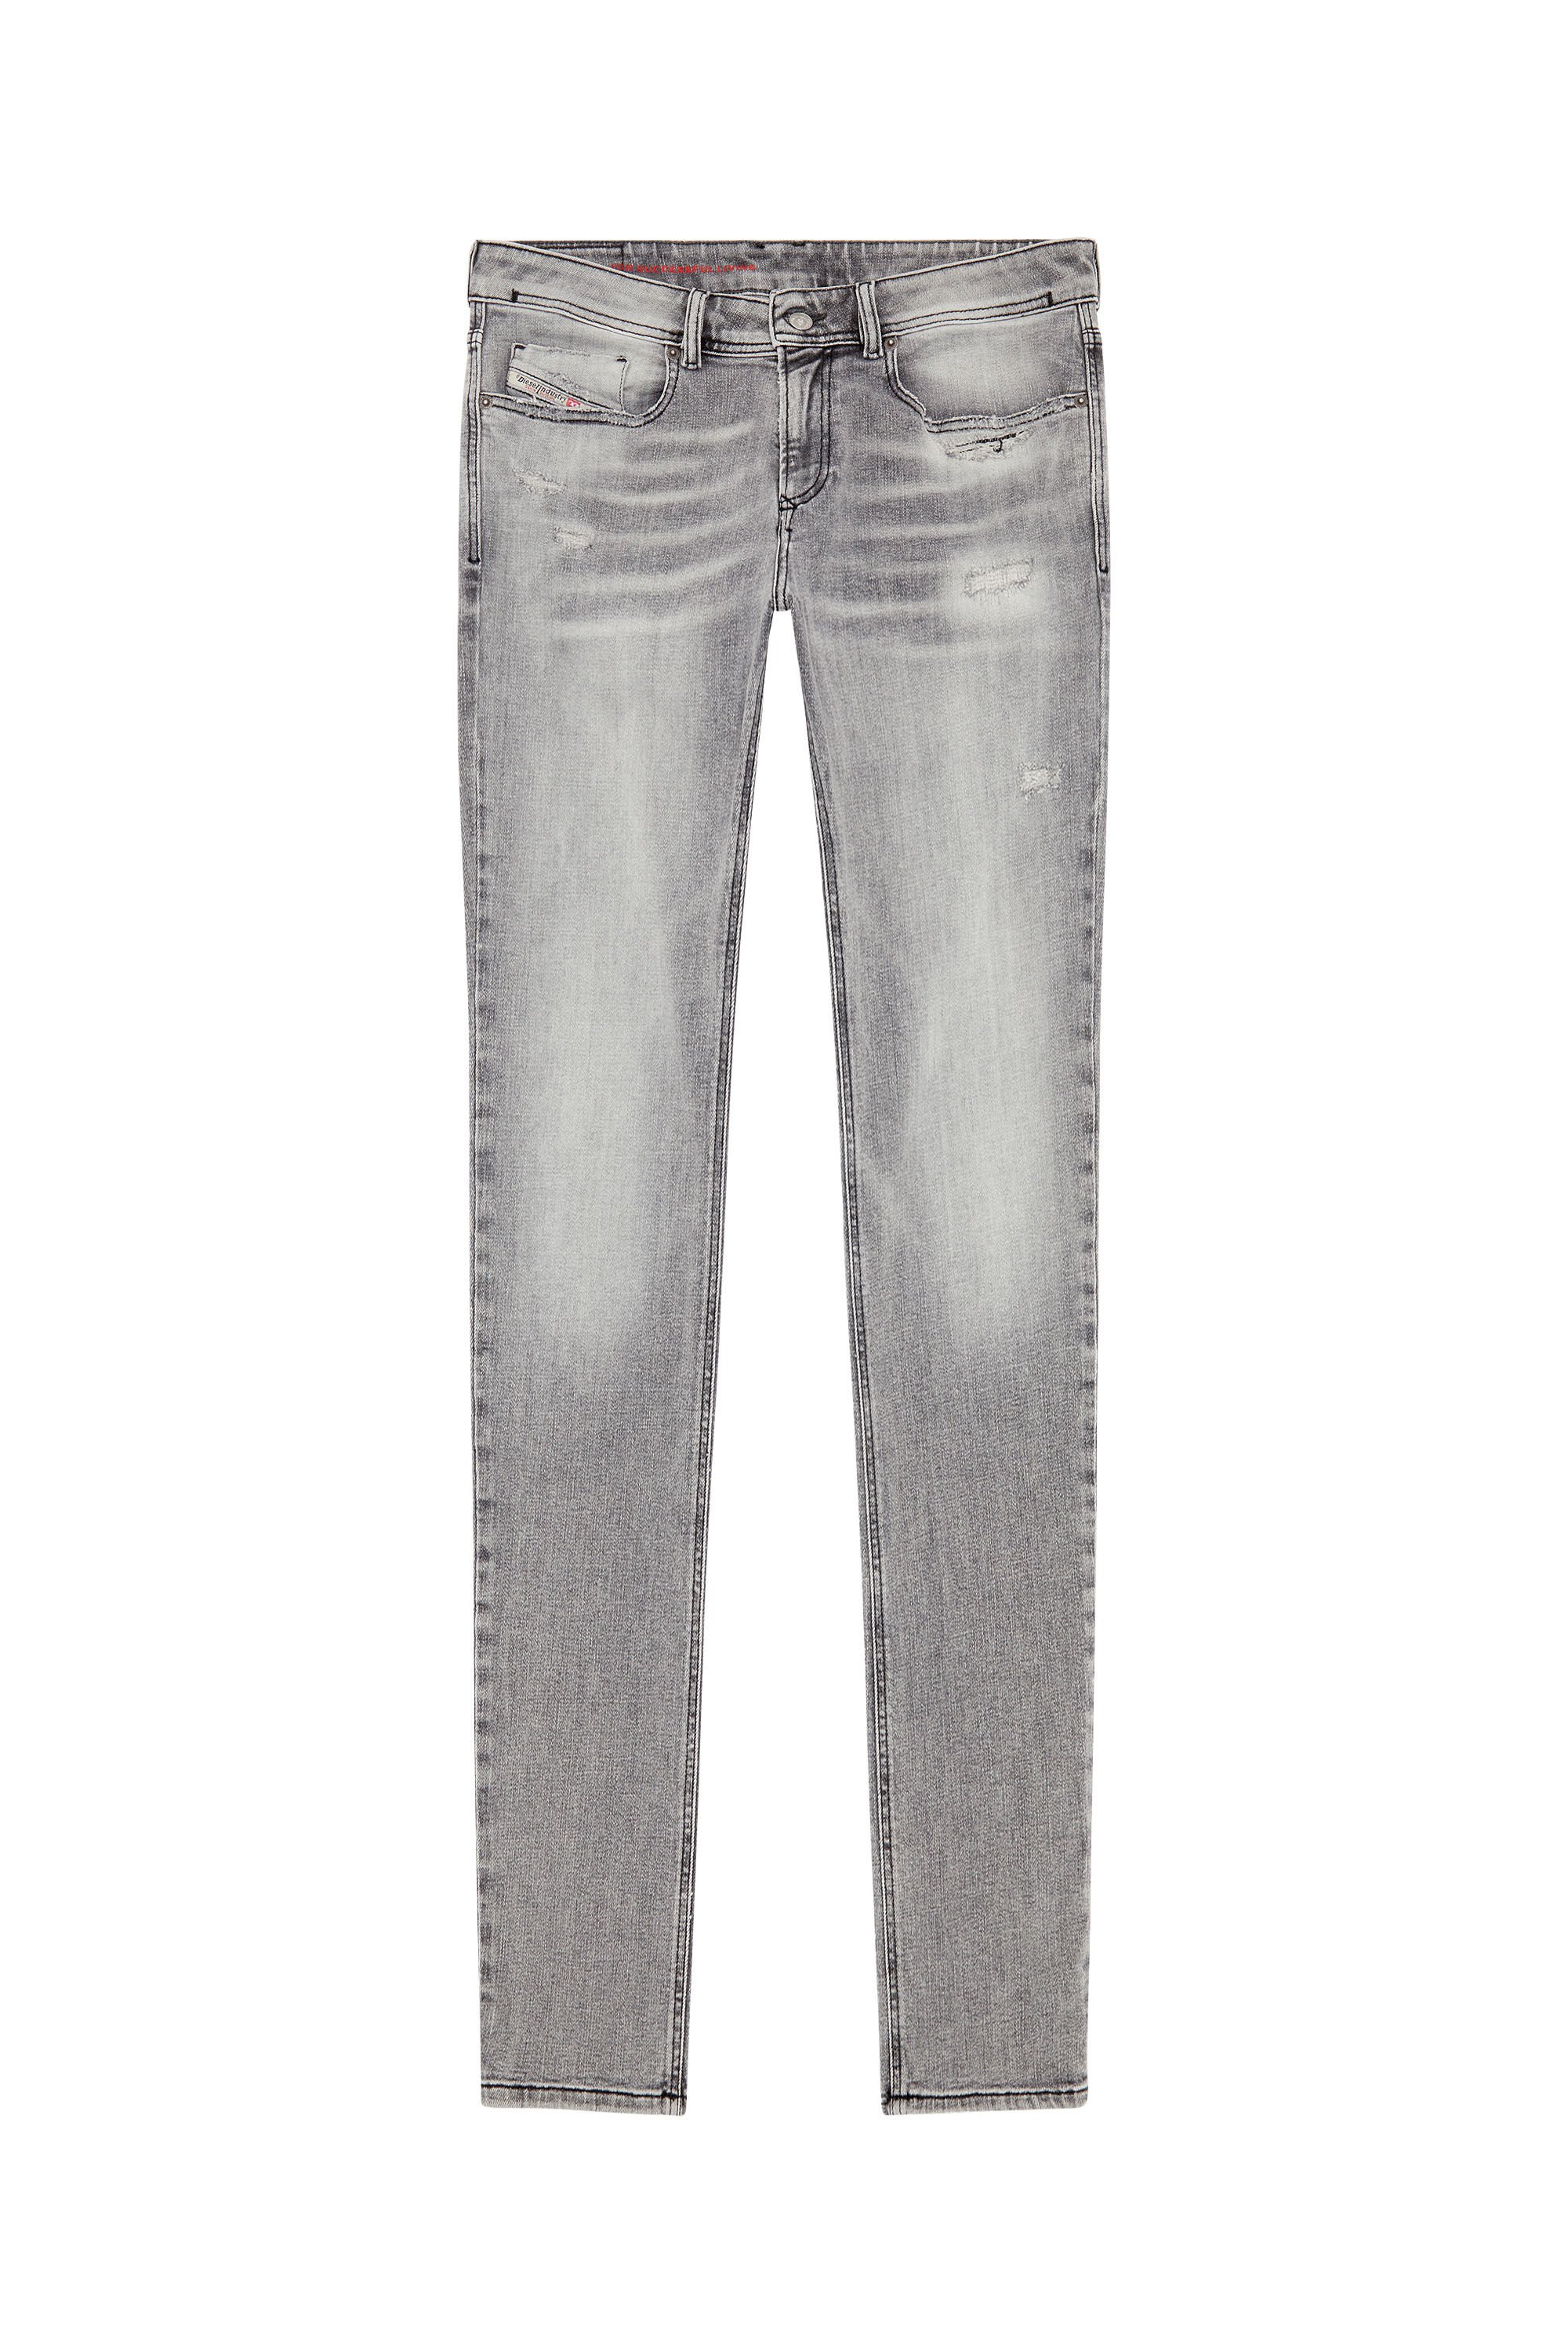 Diesel - Man Skinny Jeans 1979 Sleenker E9B97, Black/Dark grey - Image 2